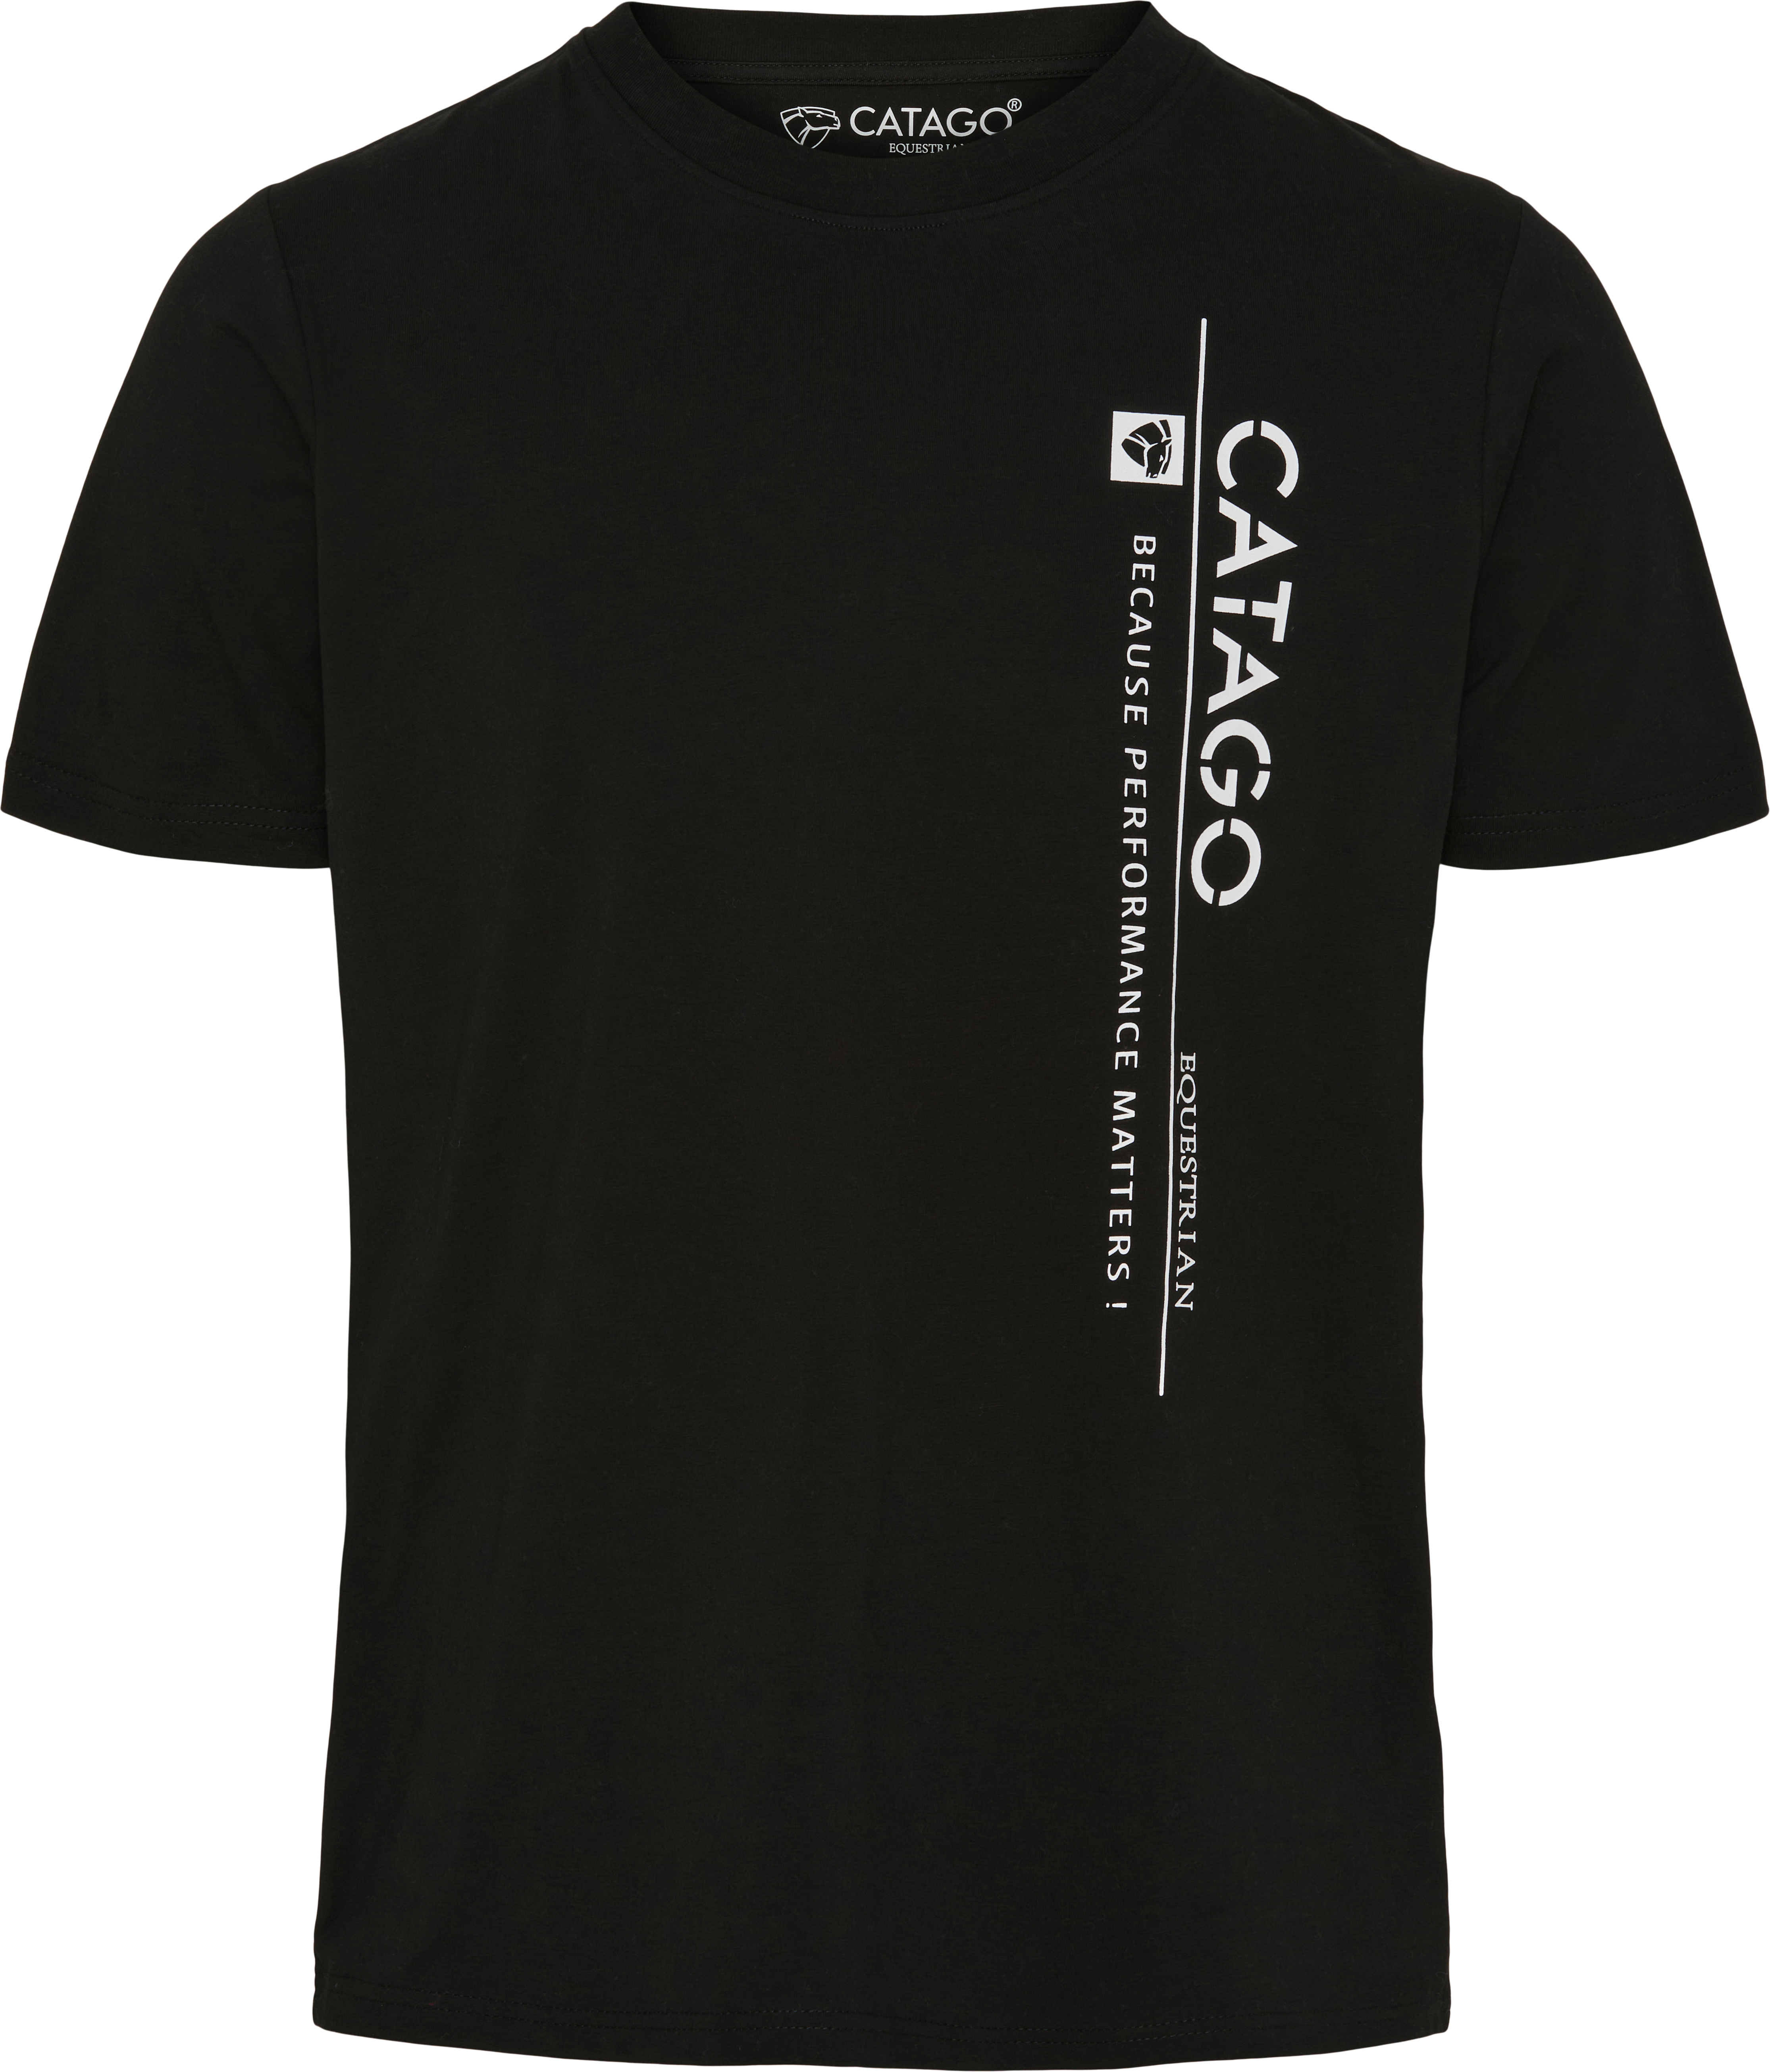 CATAGO MEN Nick T-shirt - Black (L), Catago